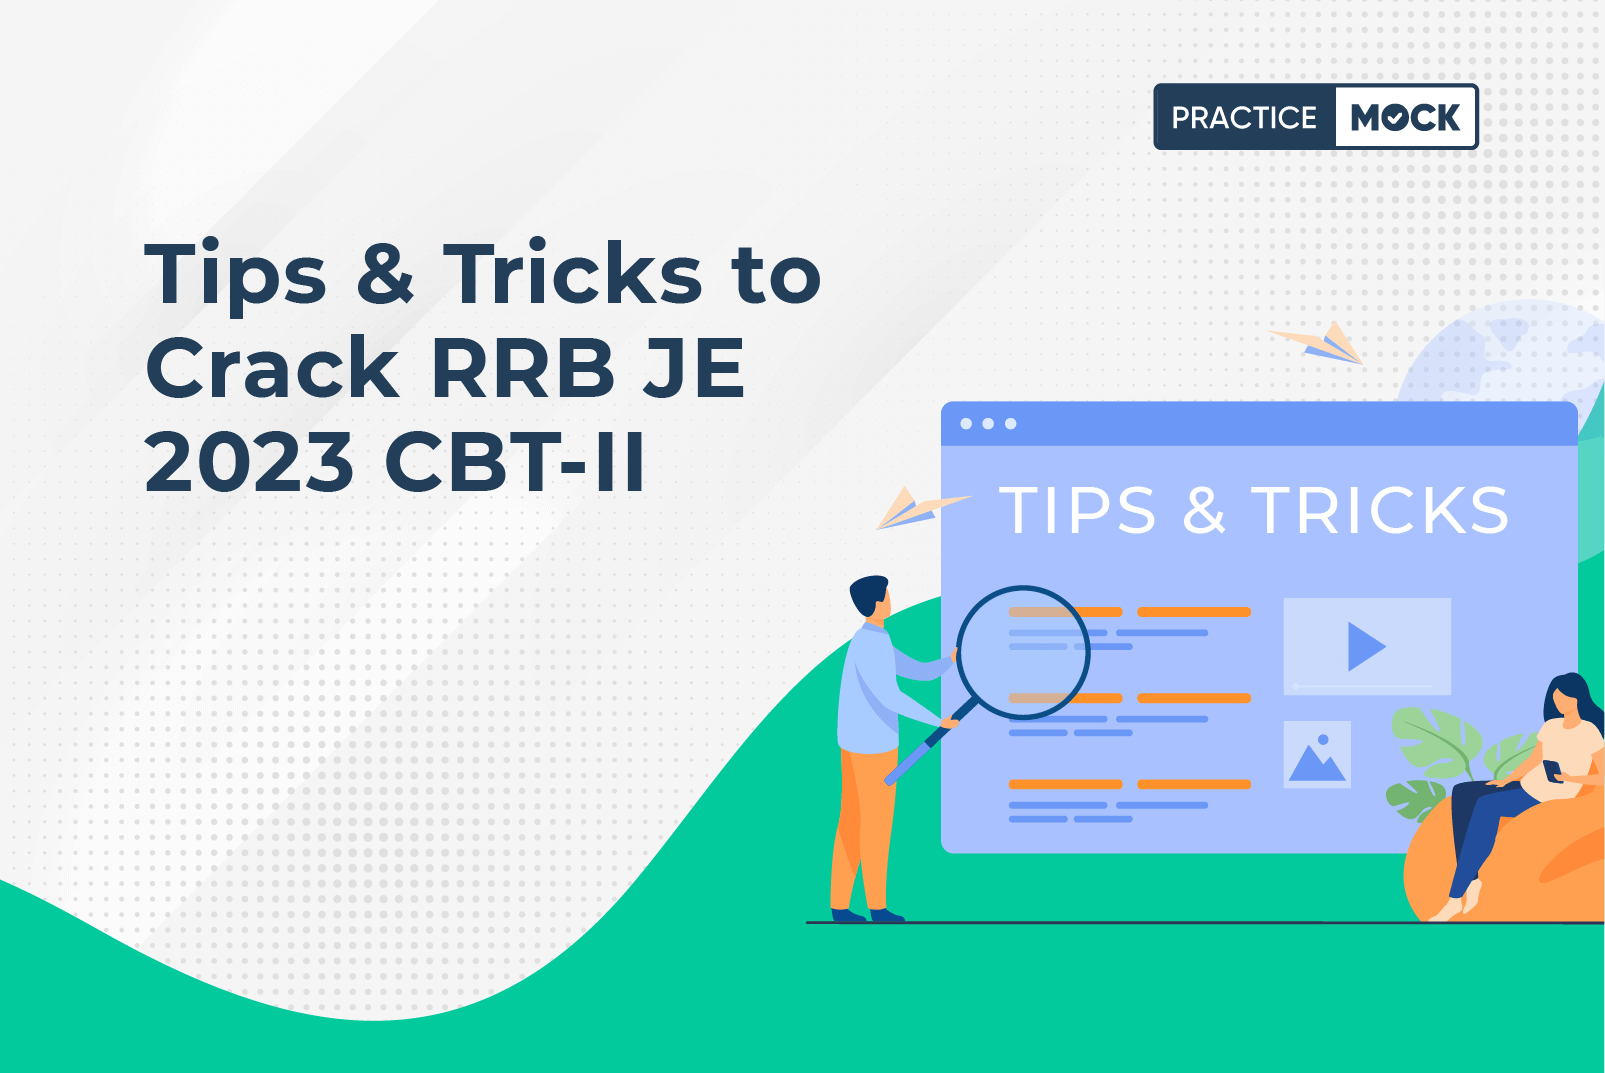 Tips & Tricks to Crack RRB JE 2023 CBT II